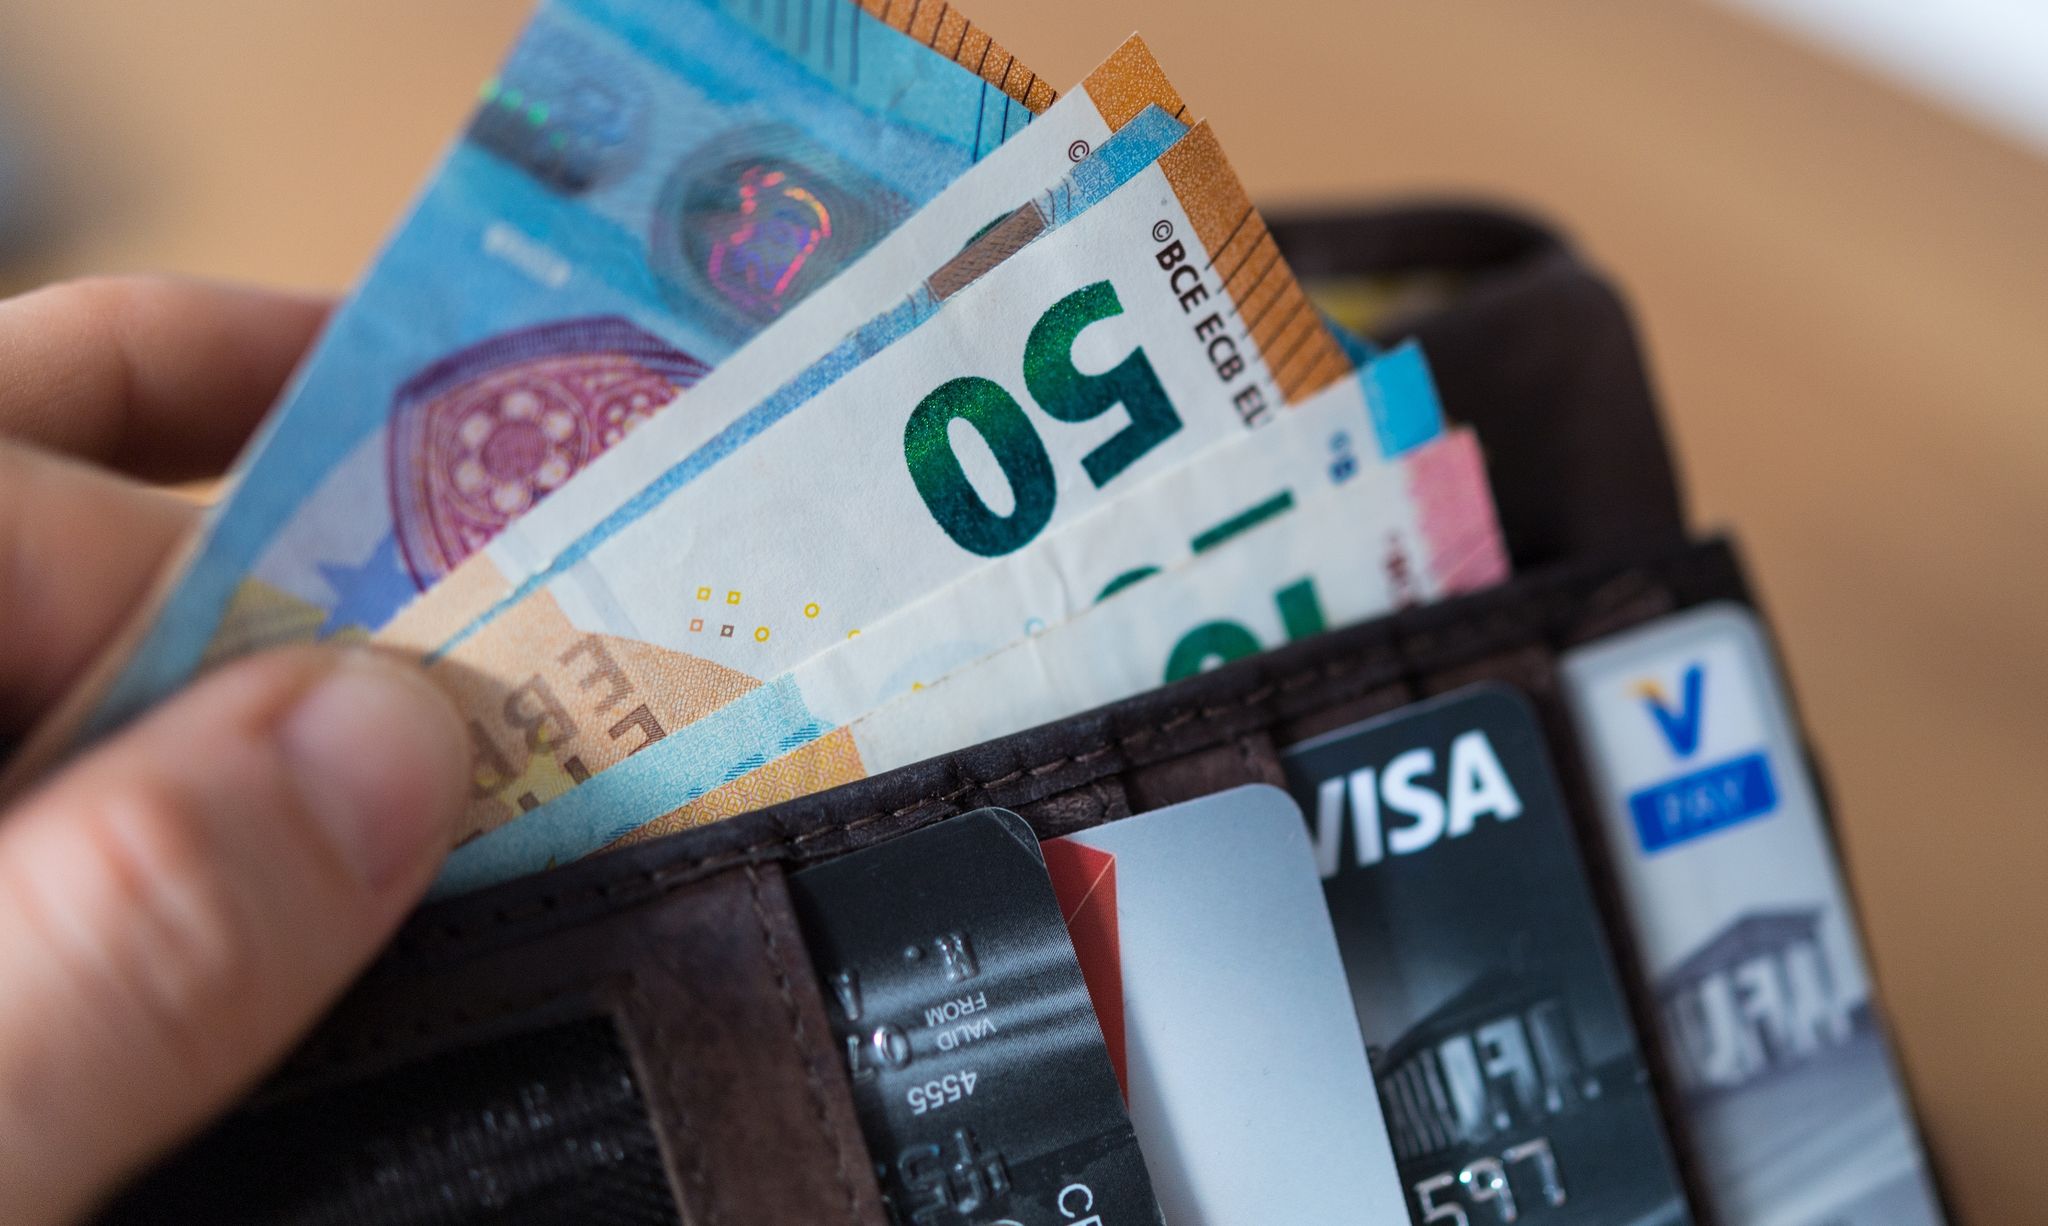 Bargeld und verschiedene Zahlungskarten im Geldbeutel: Wer so in den Urlaub reist, dürfte für Zahlungsvorgänge im Ausland gut aufgestellt sein.